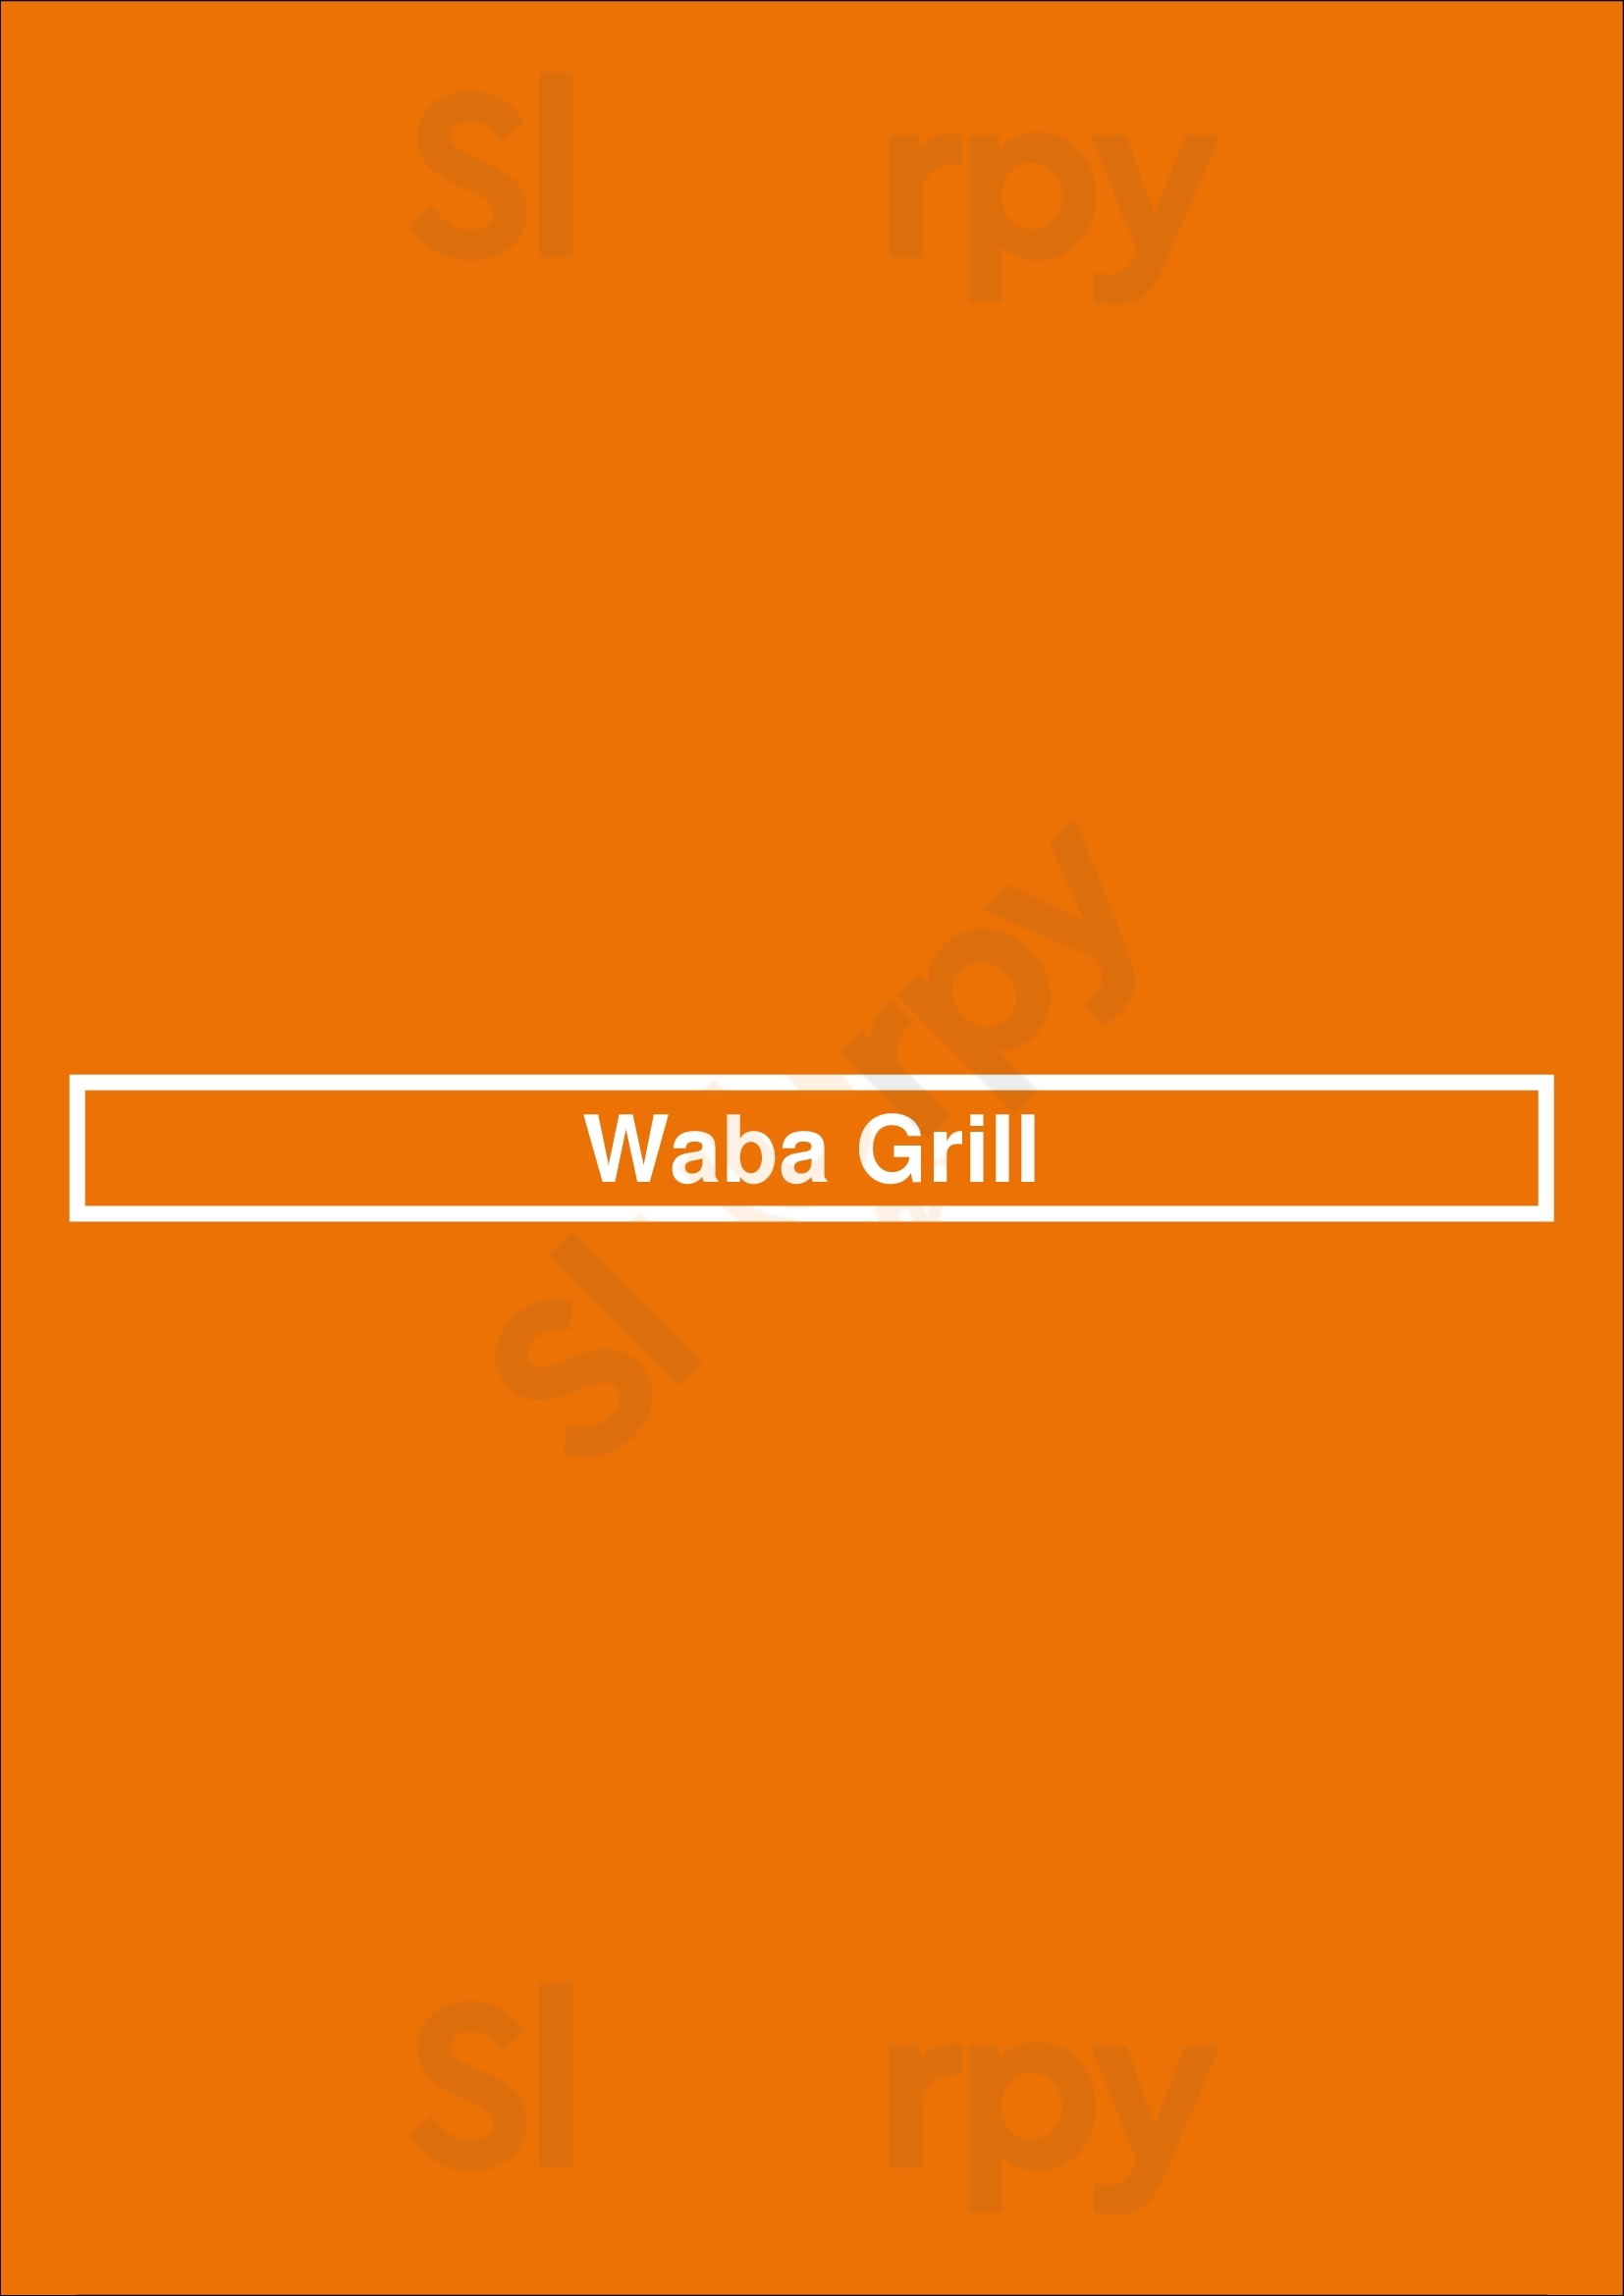 Waba Grill Long Beach Menu - 1